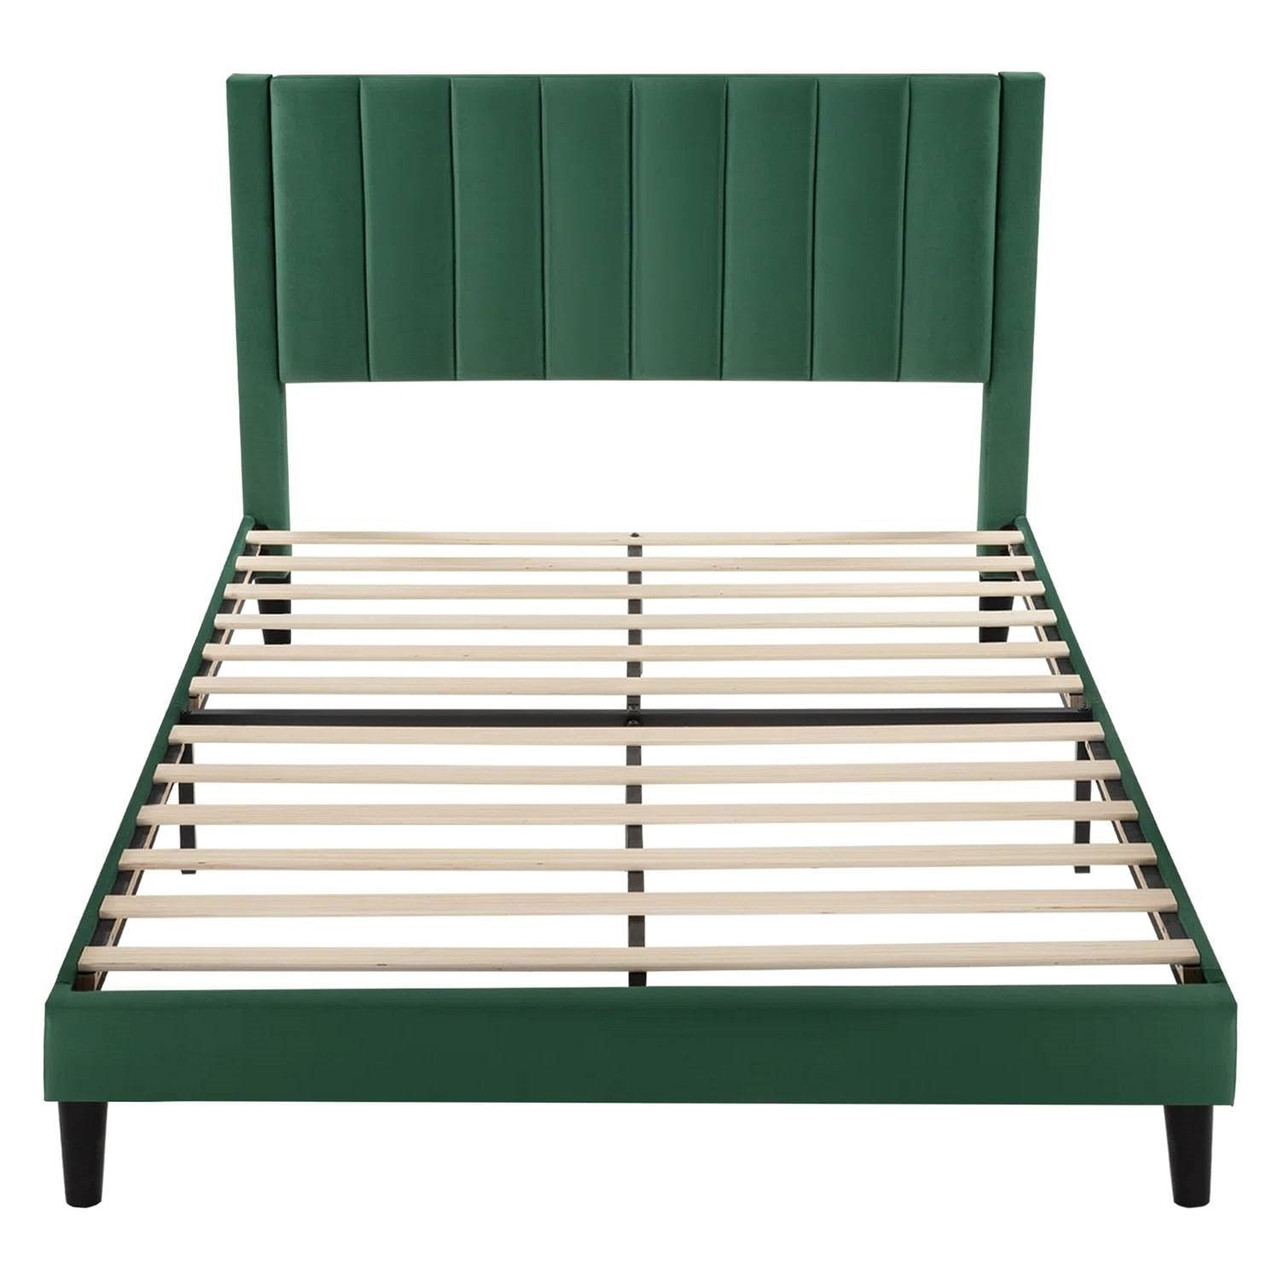 Full size Modern Green Velvet Upholstered Platform Bed with Headboard